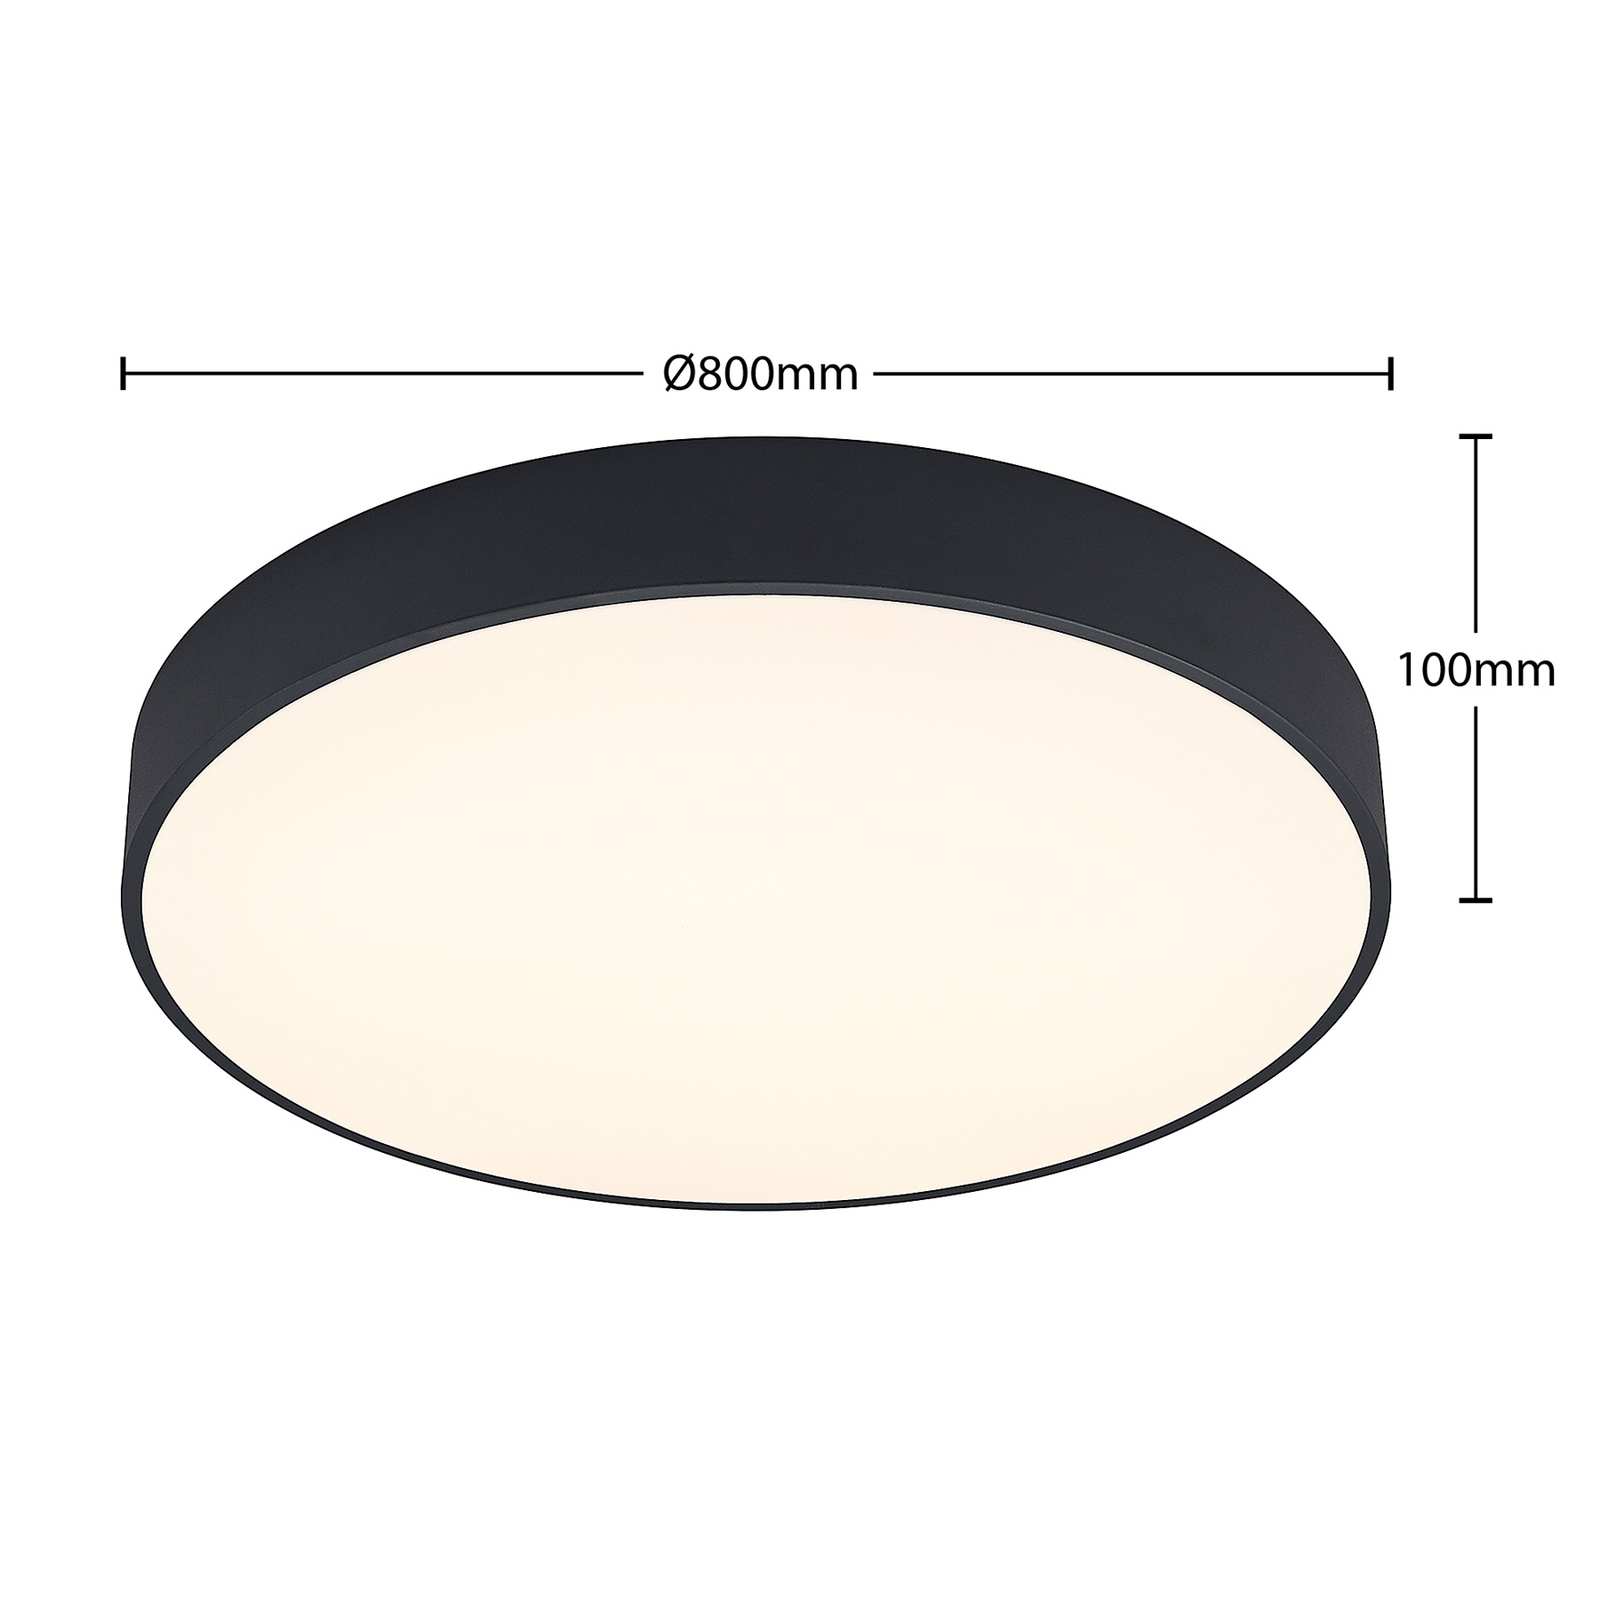 Arcchio Noabelle LED ceiling lamp, black, 80 cm